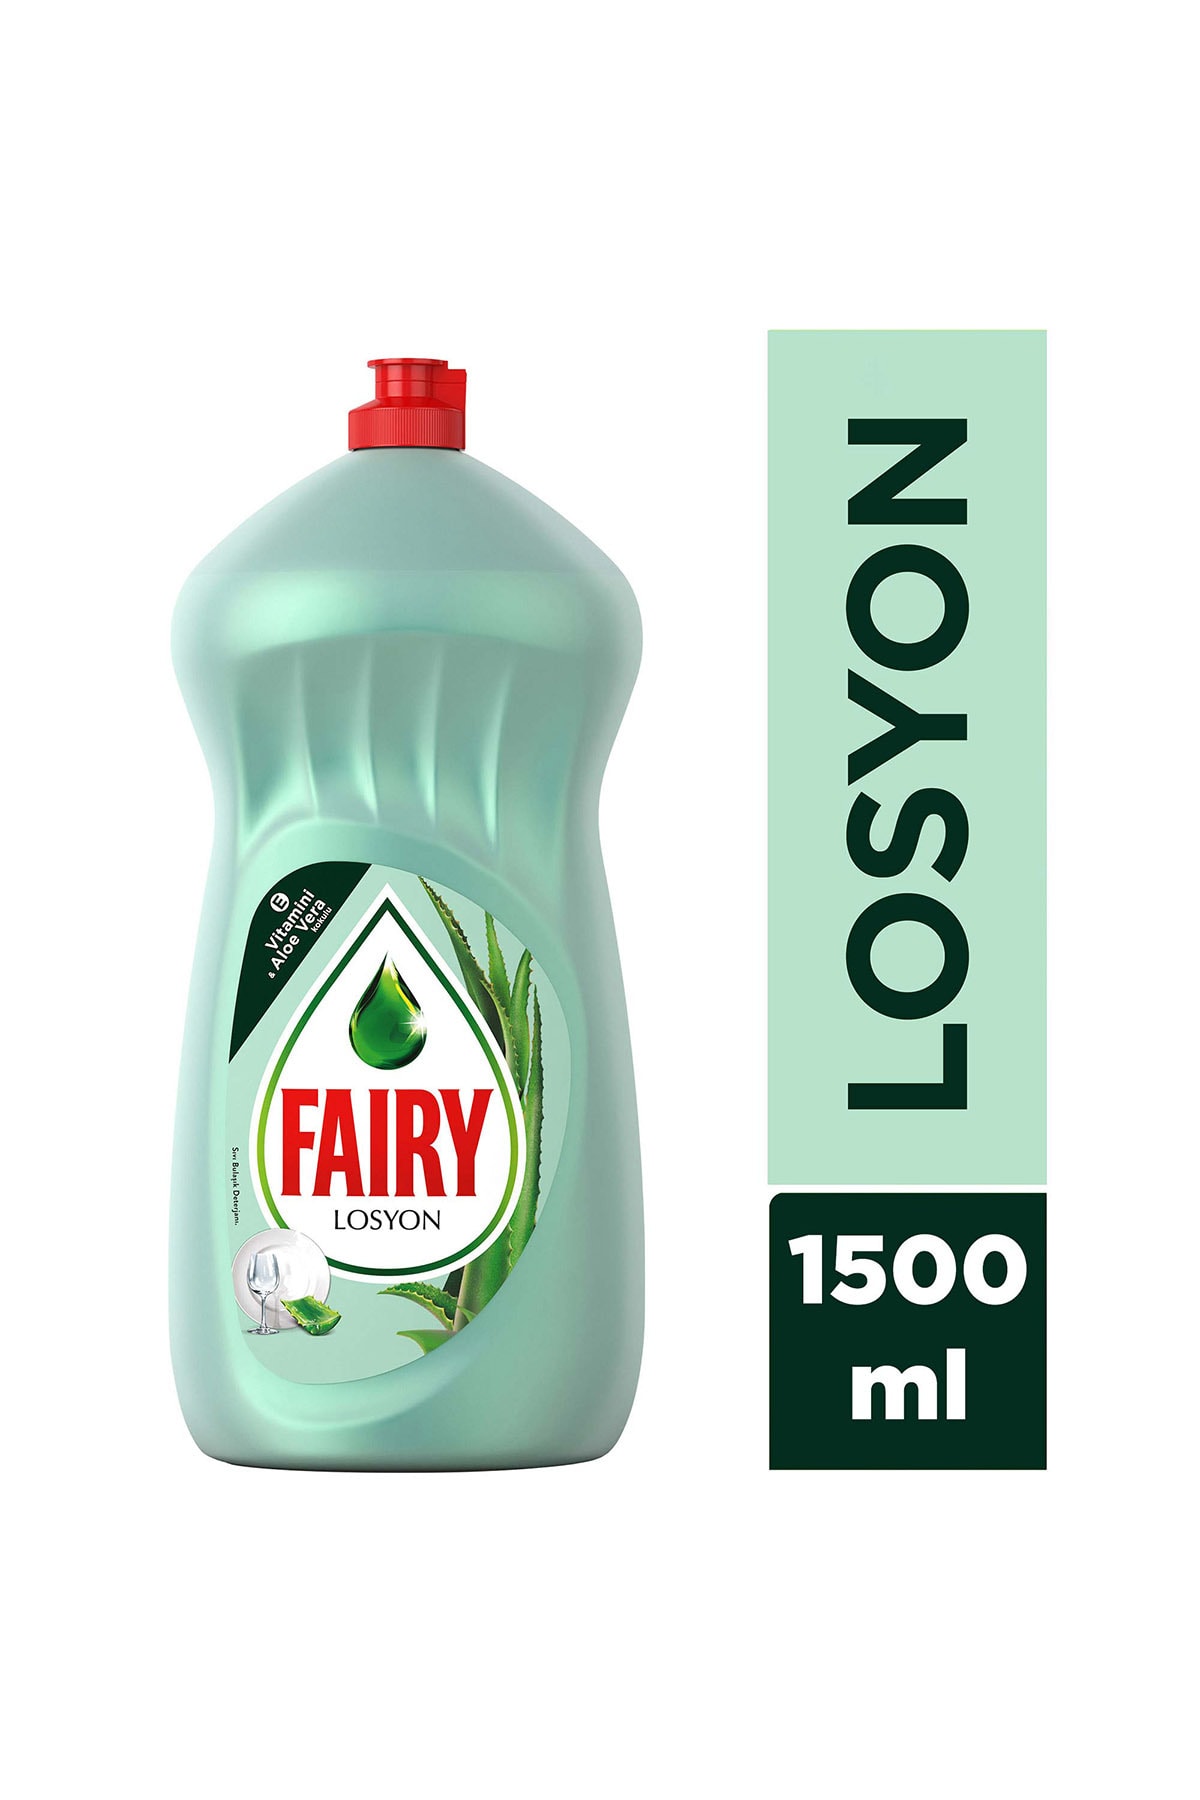 Fairy Losyon Sıvı Bullaşık Deterjanı 1500 ml Aloe Vera Kokulu